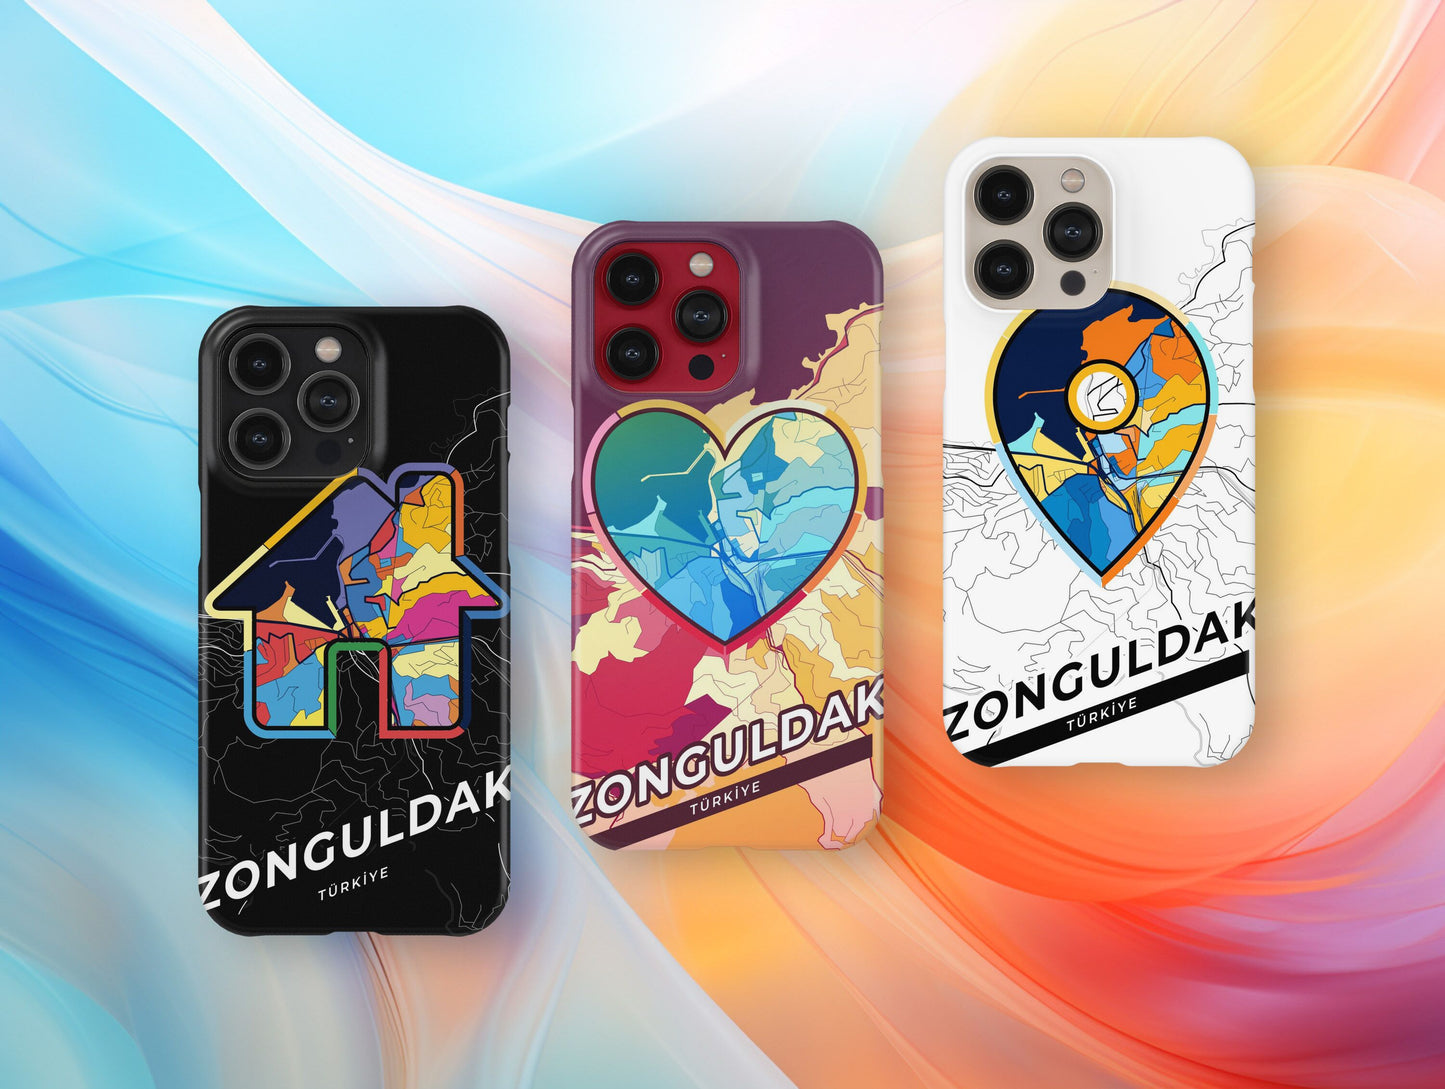 Zonguldak Turkey slim phone case with colorful icon